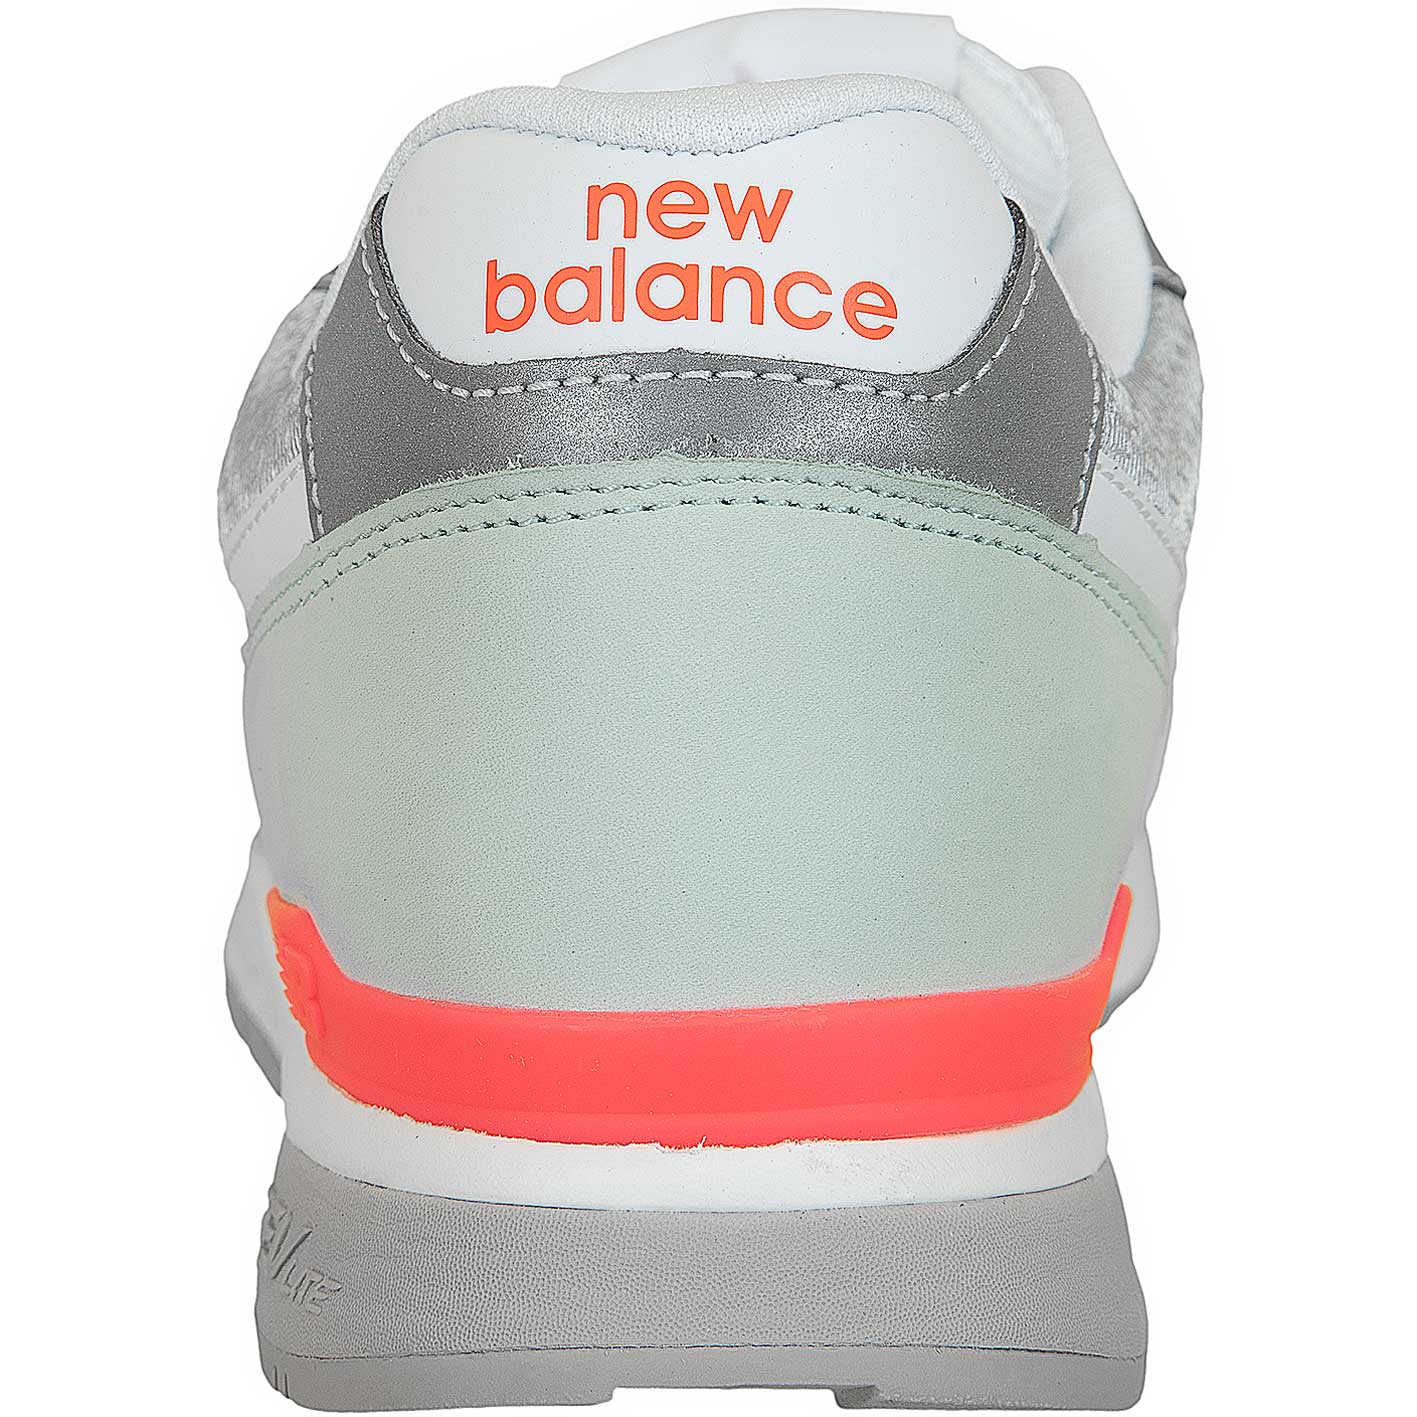 ☆ New Balance Sneaker 840 Synthetik/Textil/Leder weiß/silber - hier  bestellen!